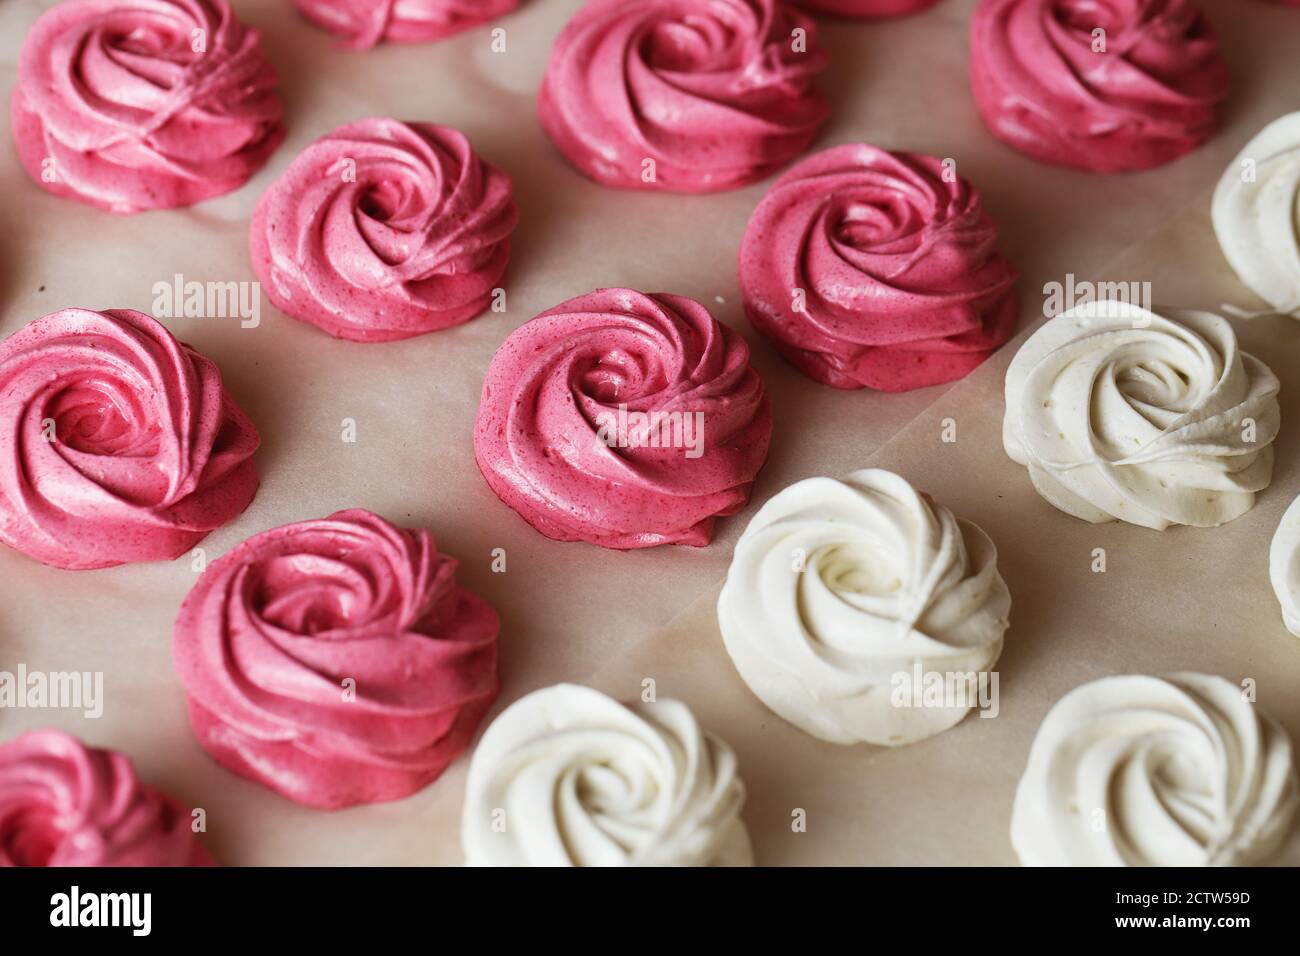 Il processo di produzione del marshmallow zephyr alla cucina della pasticceria. Rose fresche di marshmallow di frutta bianca e rosa. Fotografia alimentare Foto Stock